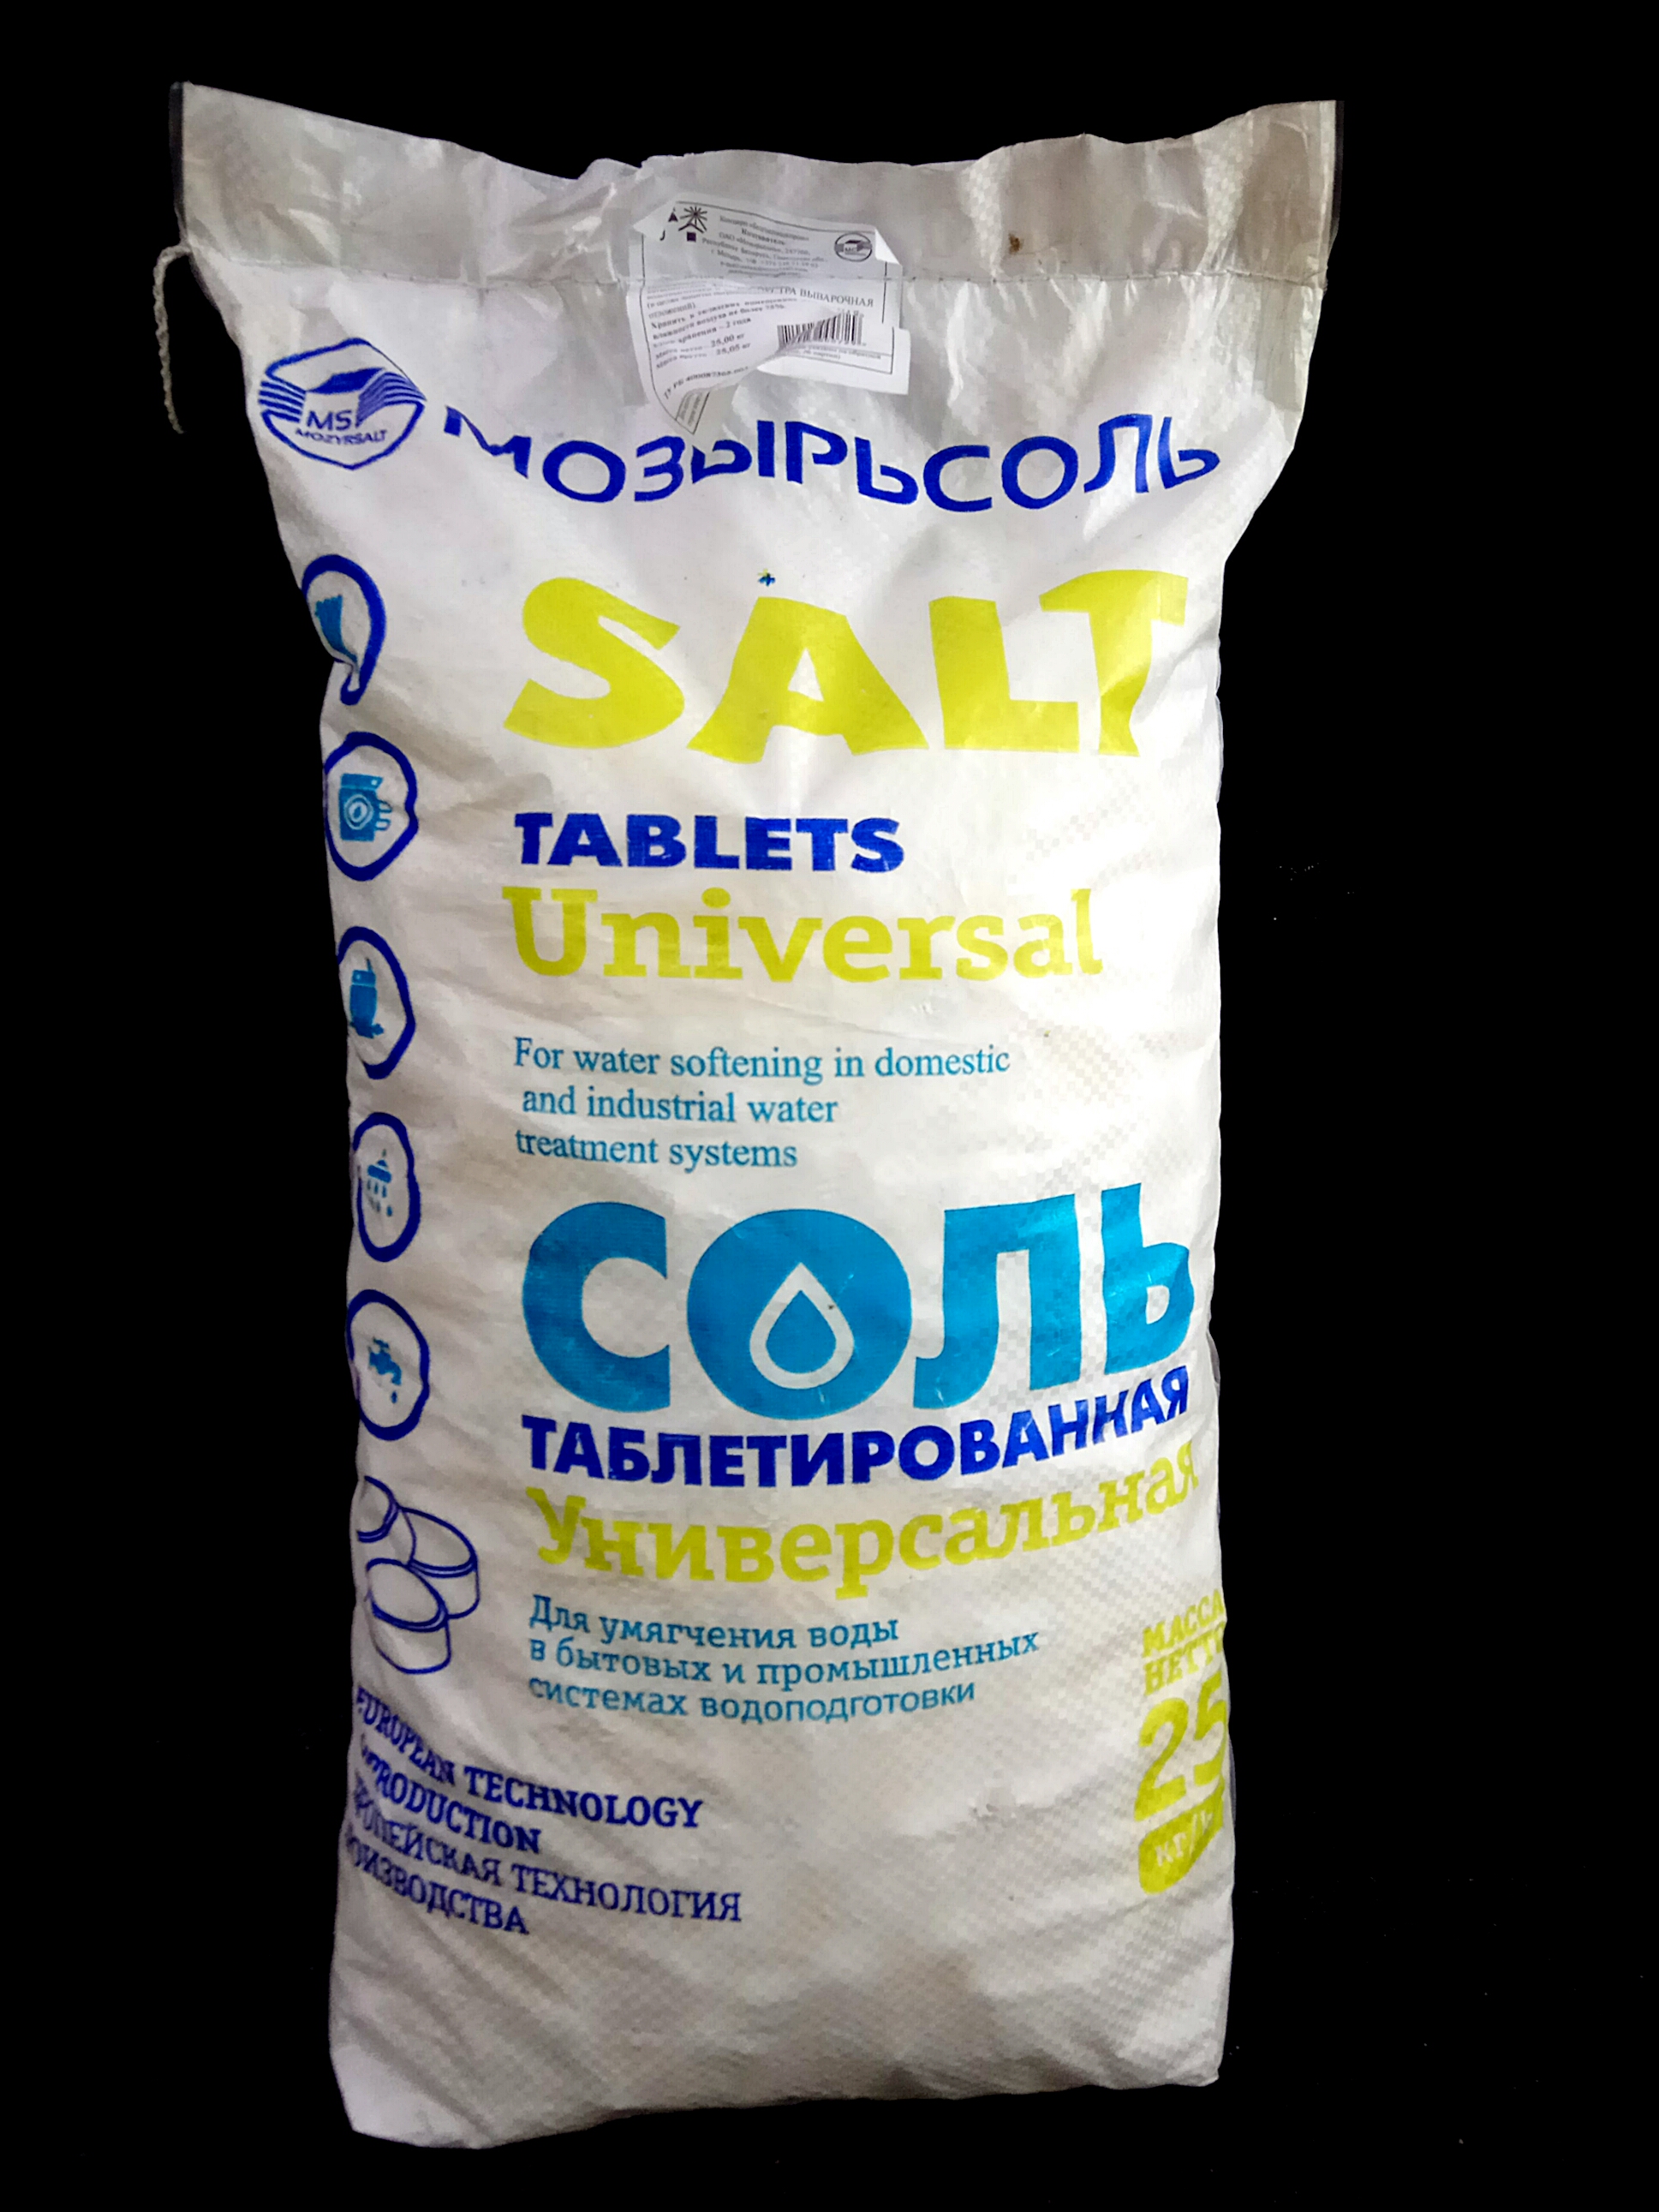 Соль поваренная экстра выварочная таблетированная "Универсальная" мешок 25 кг